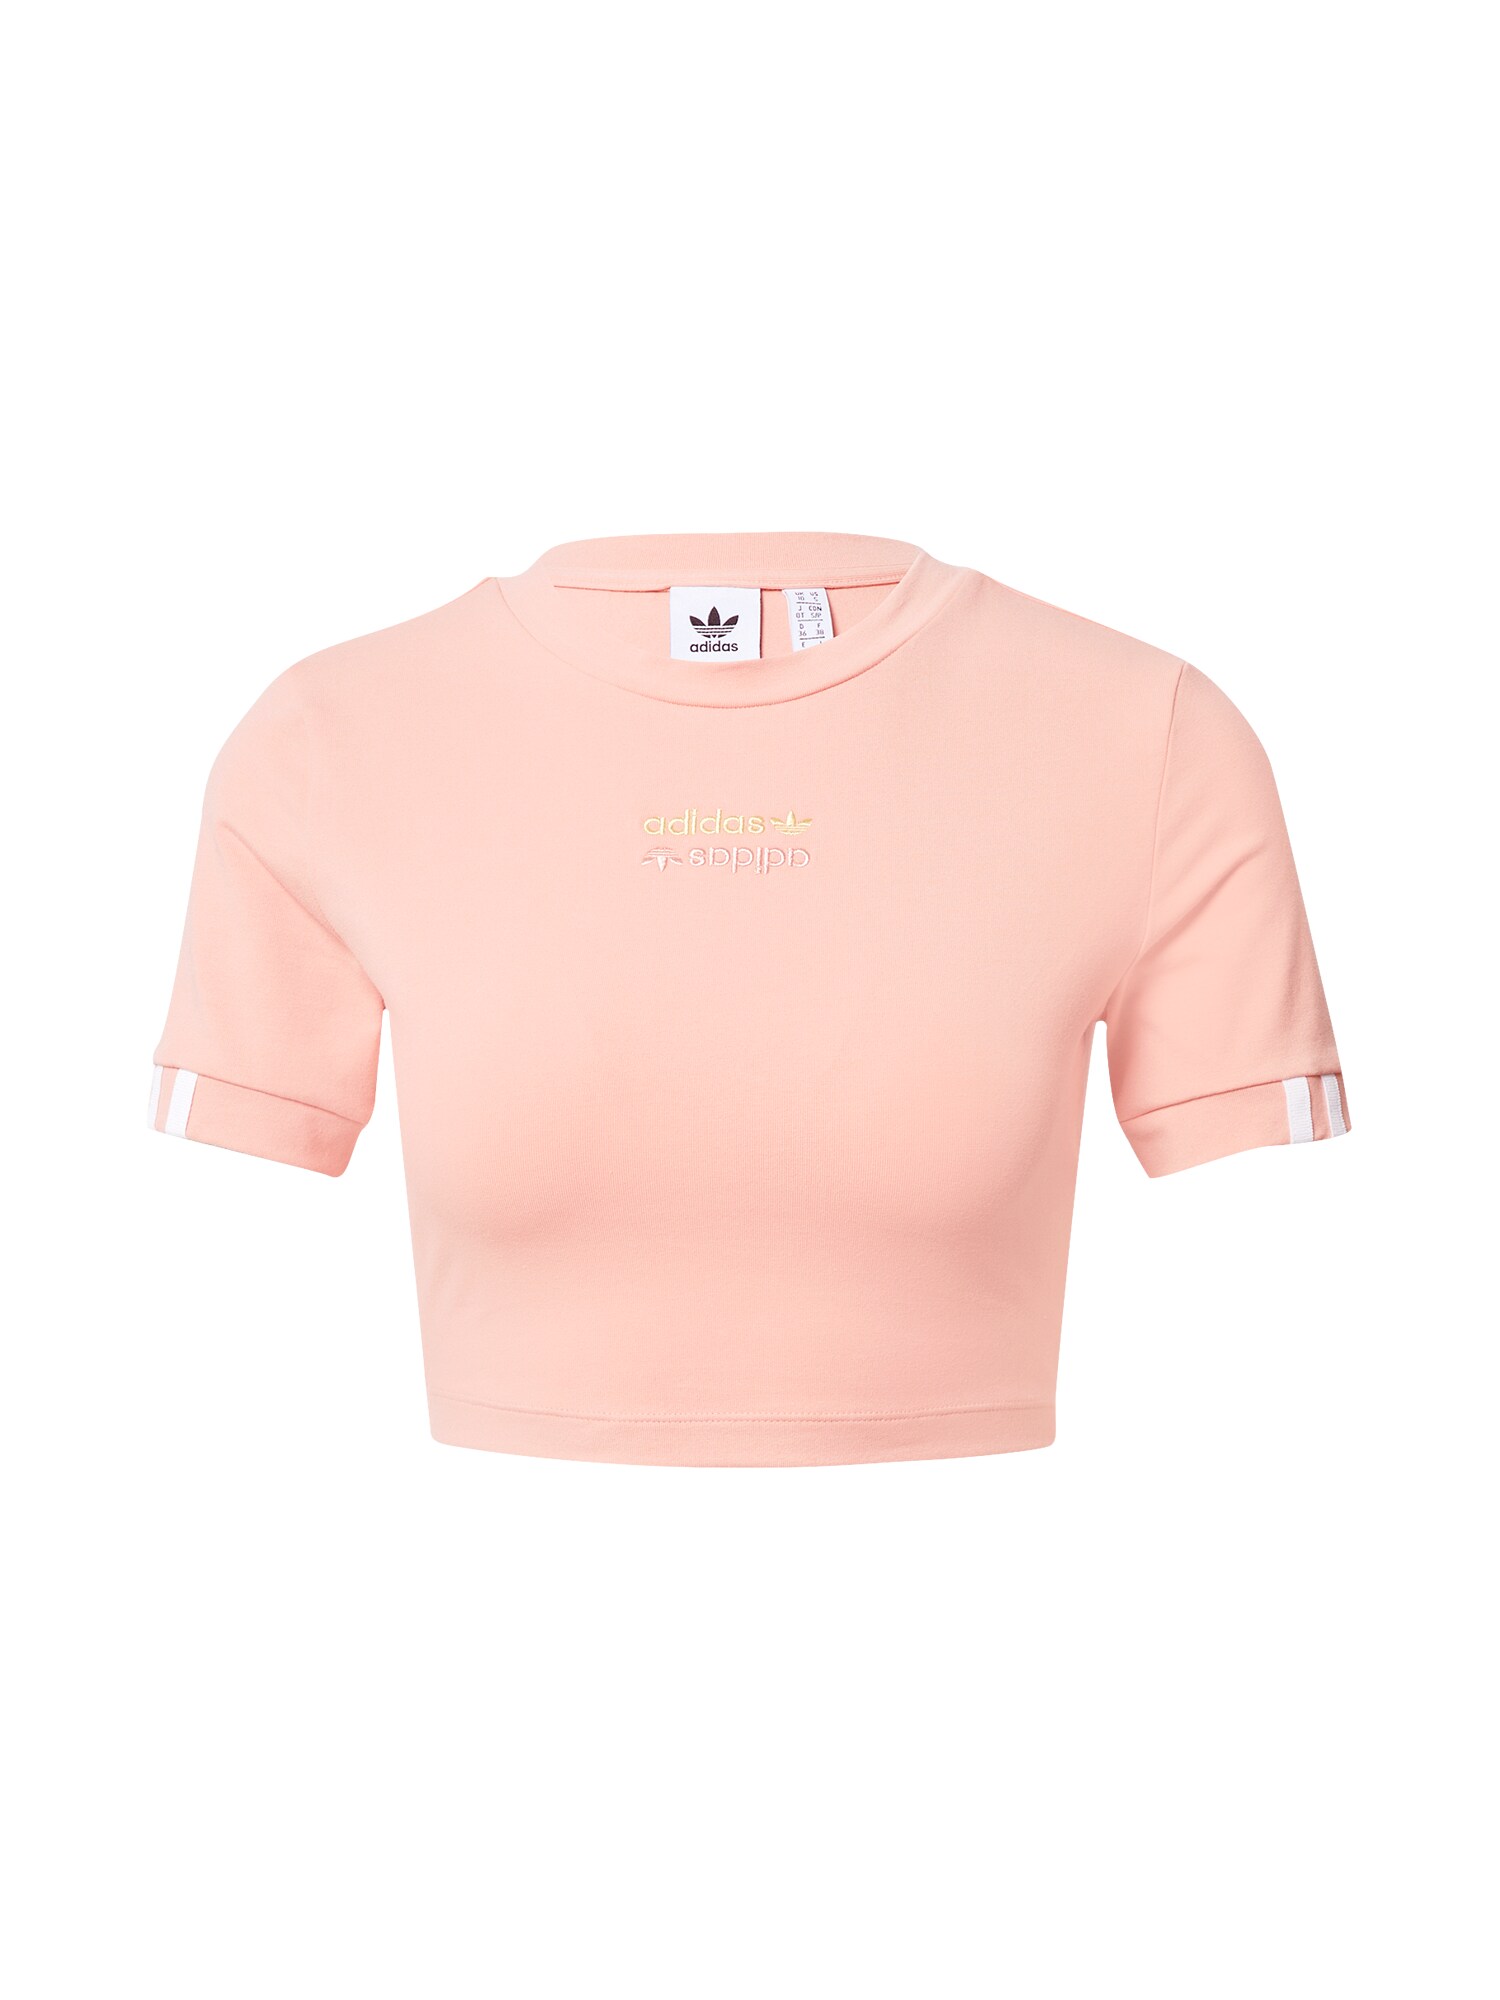 ADIDAS ORIGINALS Marškinėliai  ryškiai rožinė spalva